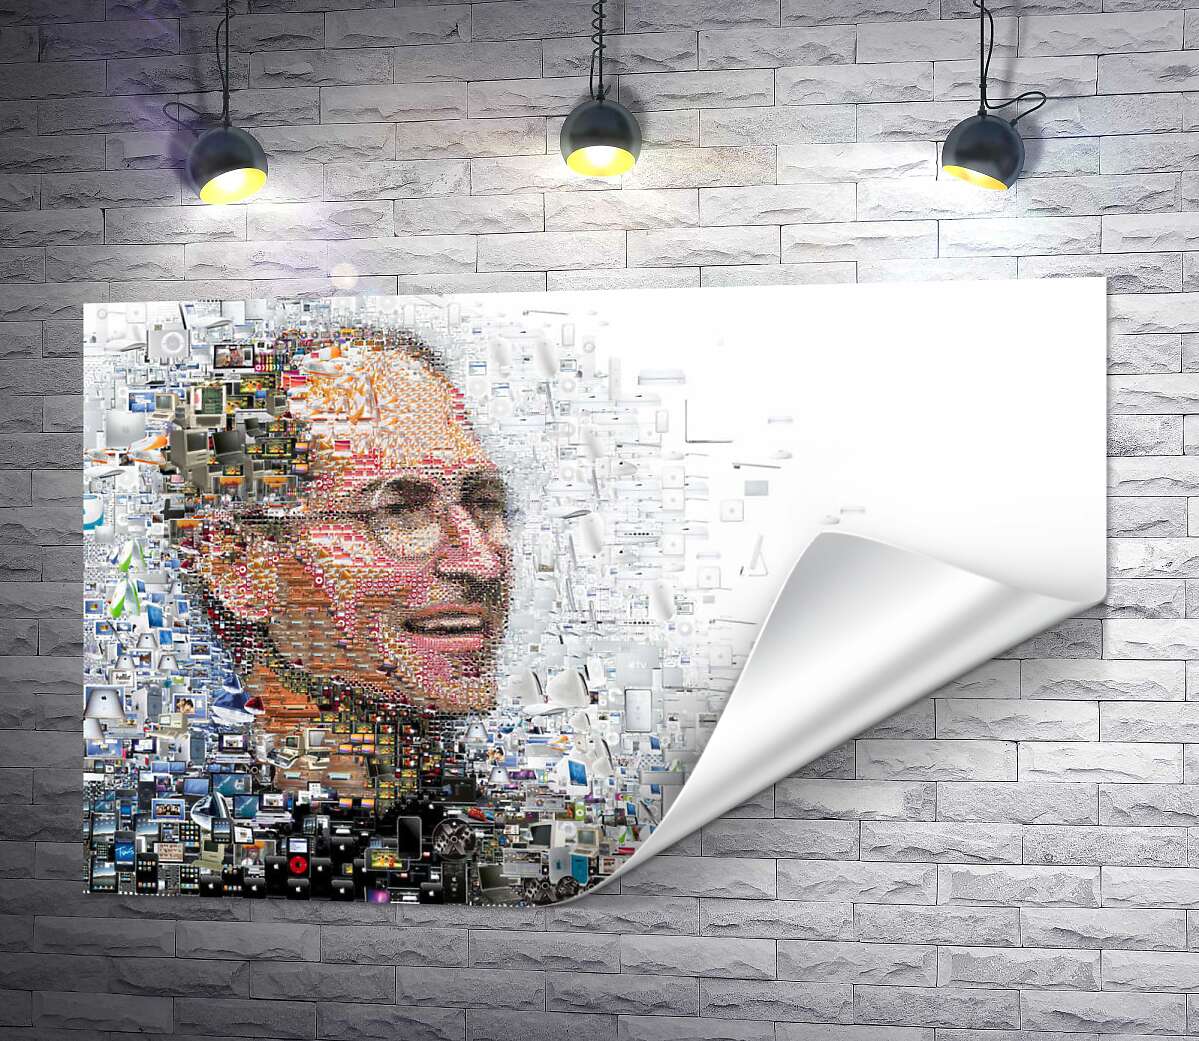 друк Стів Джобс (Steve Jobs) з тисячей зображень гаджетів